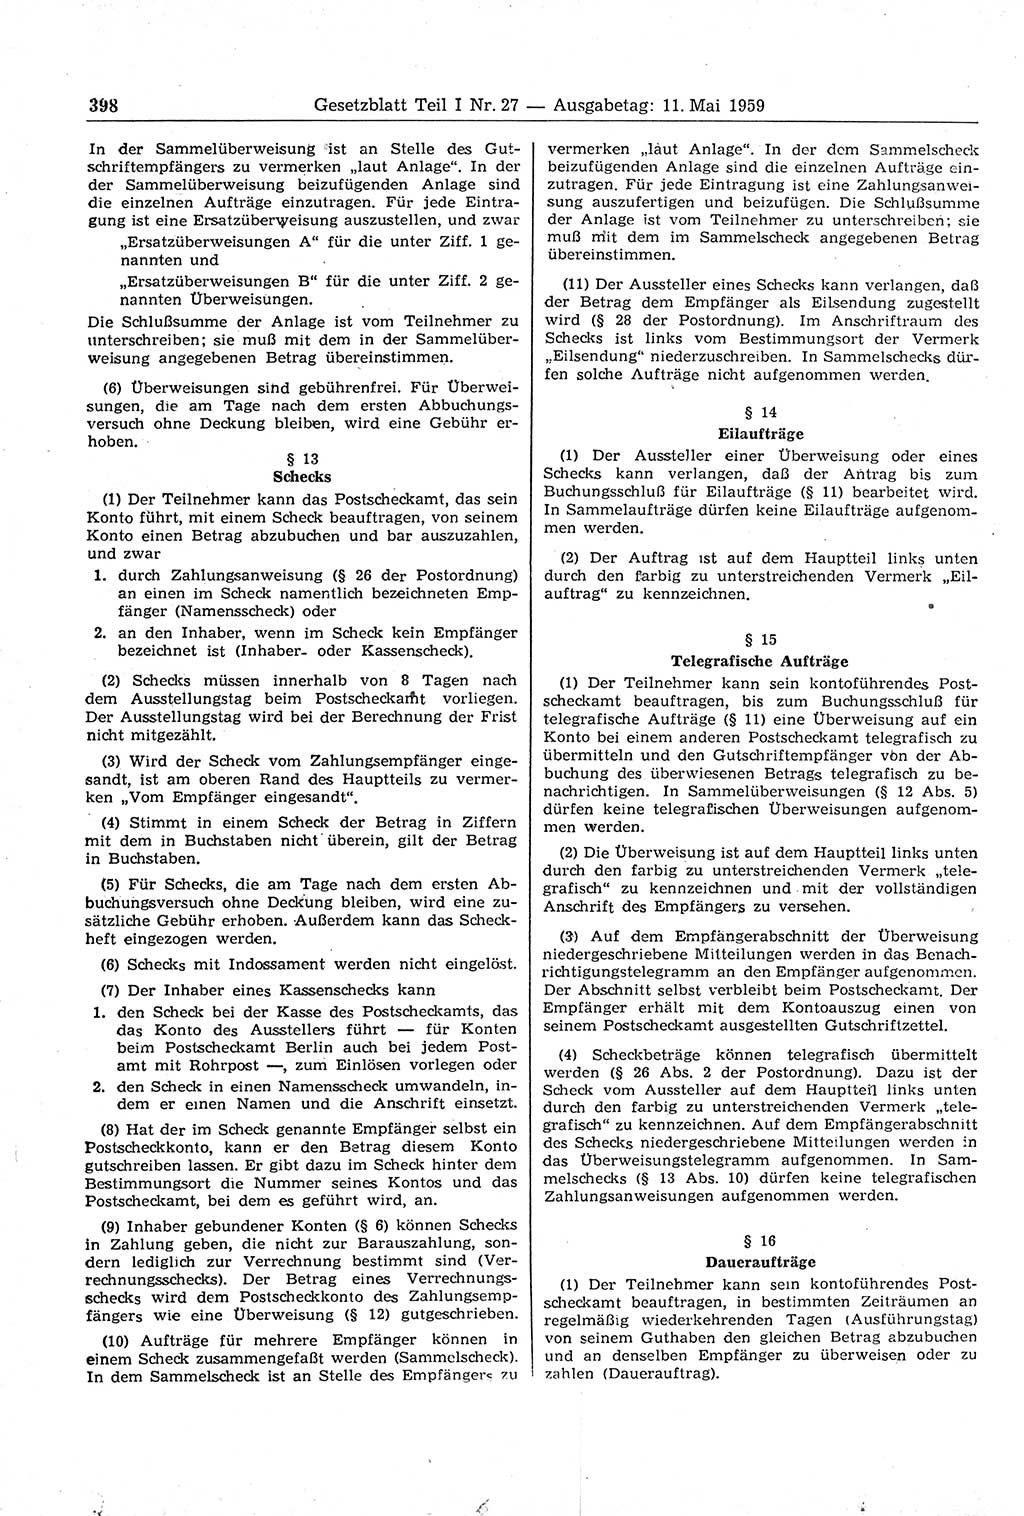 Gesetzblatt (GBl.) der Deutschen Demokratischen Republik (DDR) Teil Ⅰ 1959, Seite 398 (GBl. DDR Ⅰ 1959, S. 398)